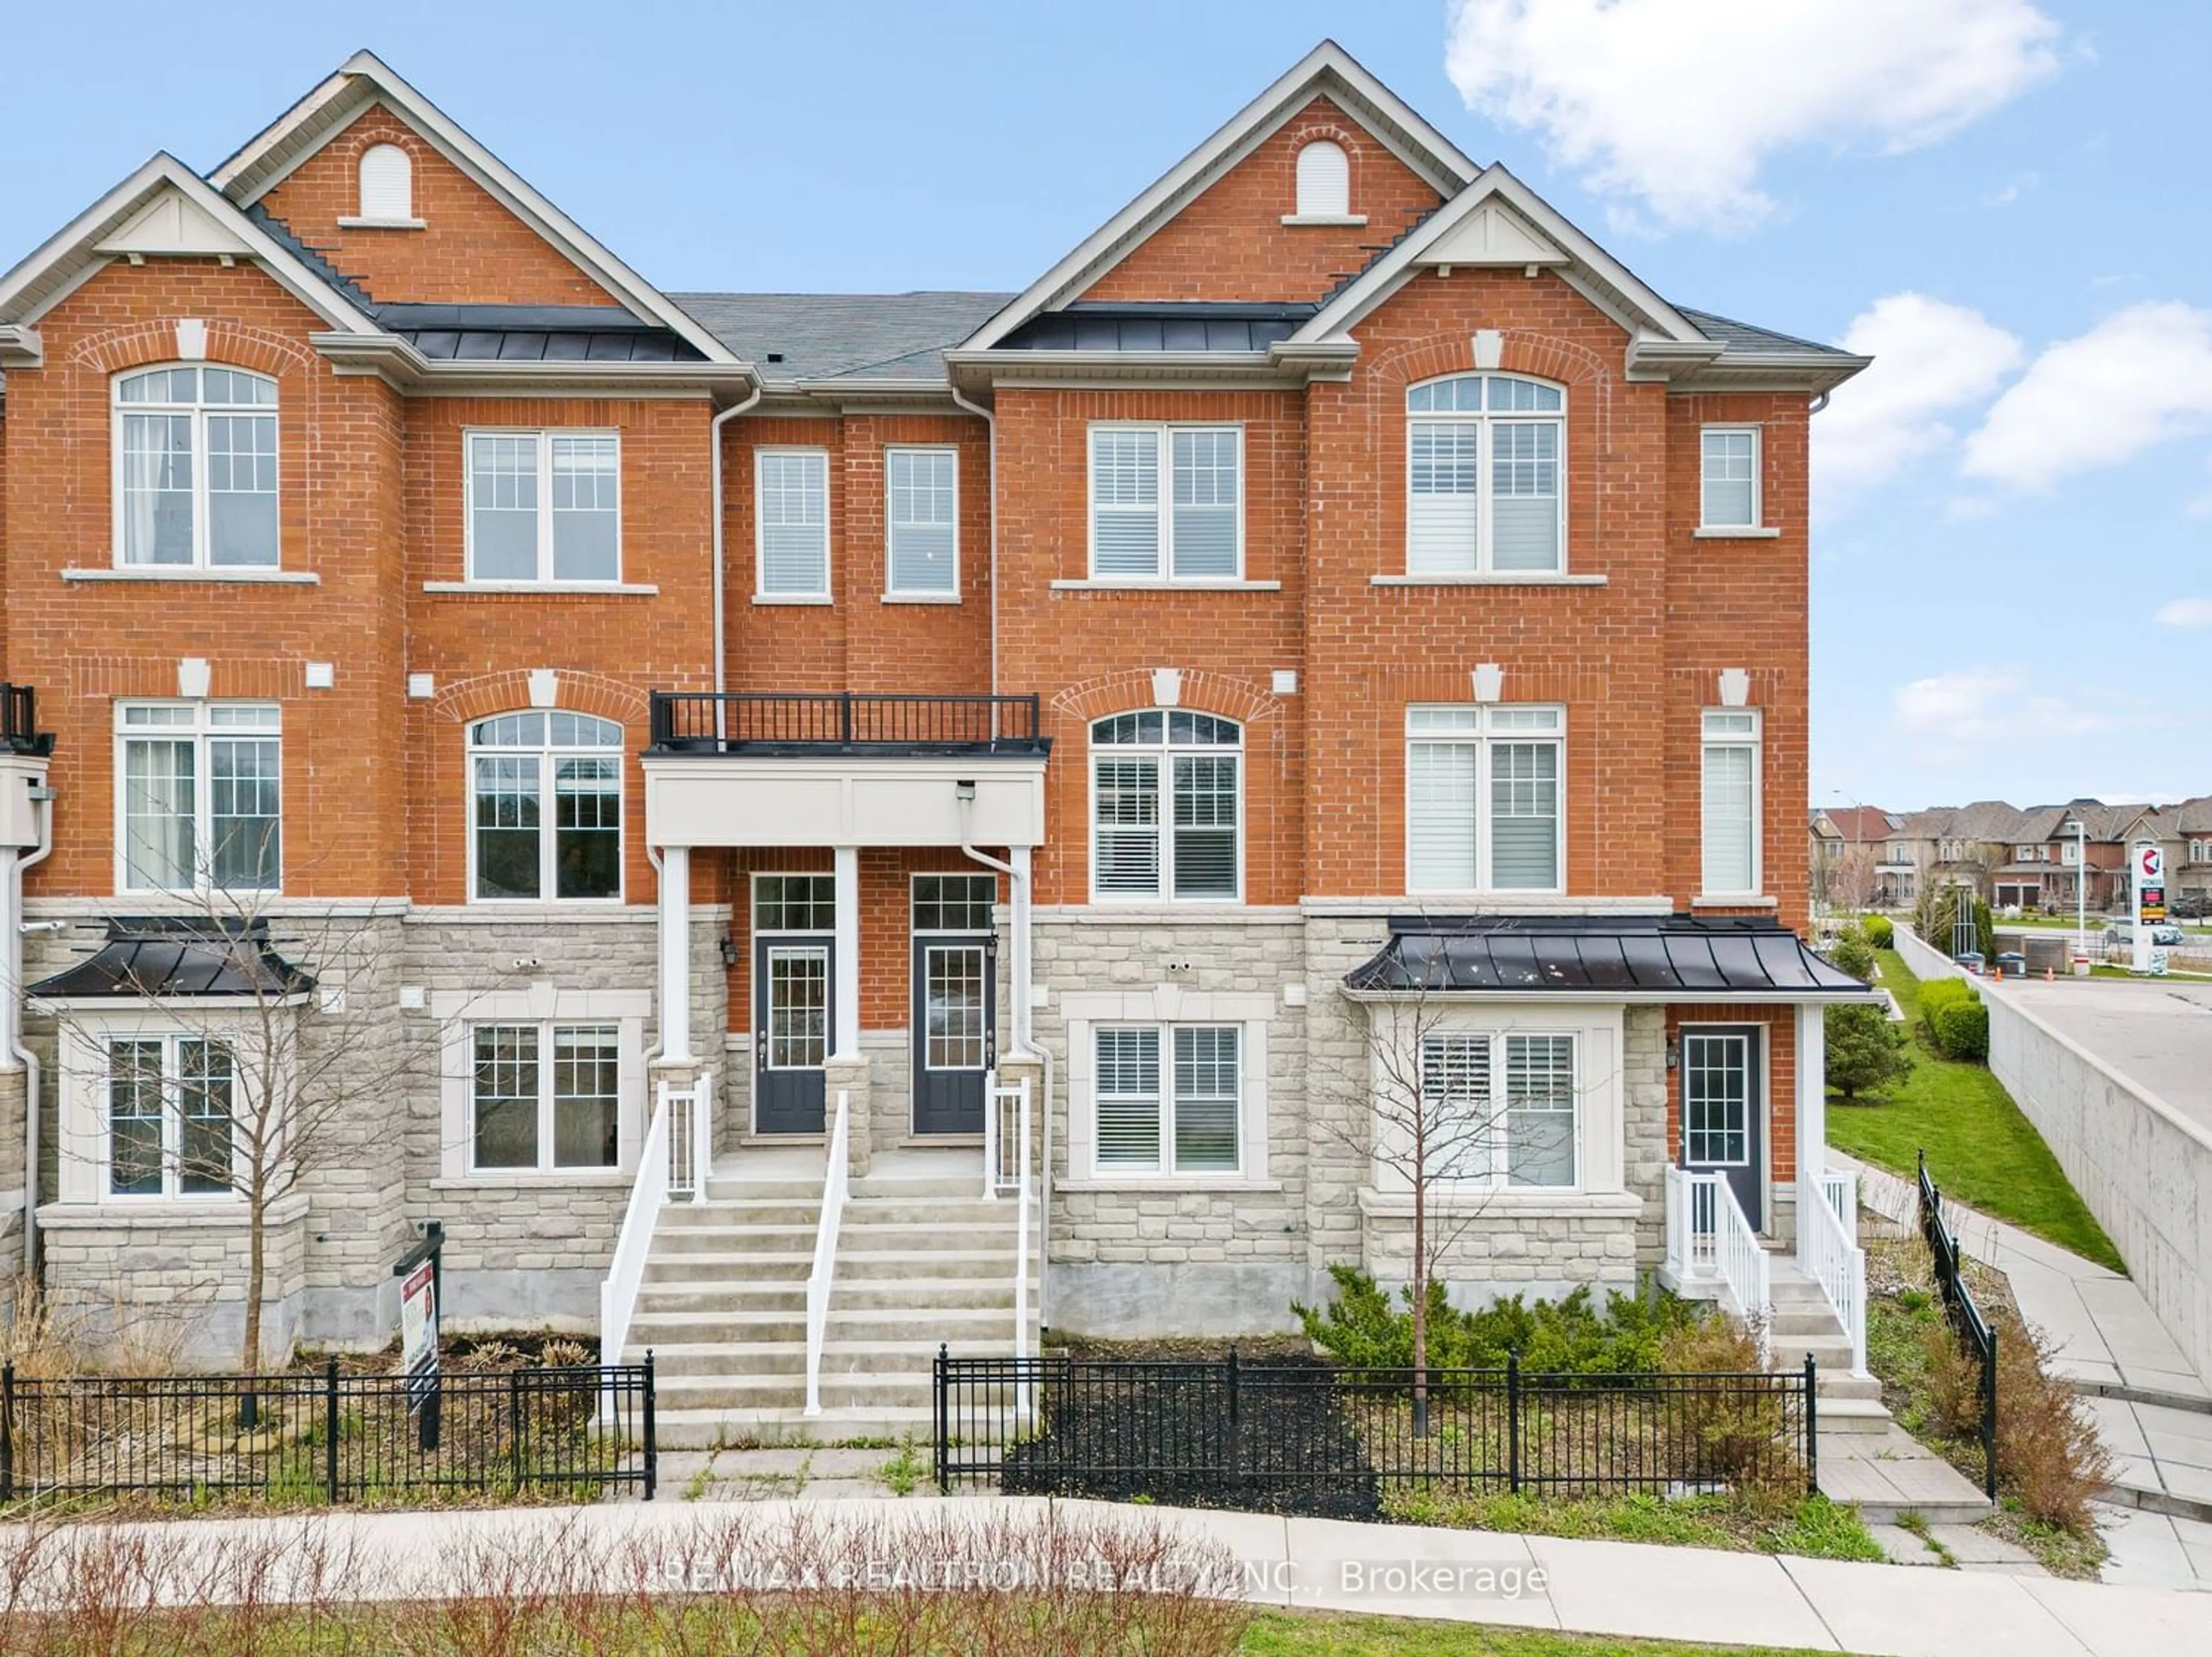 Home with brick exterior material for 143 Dundas Way, Markham Ontario L6E 0T1